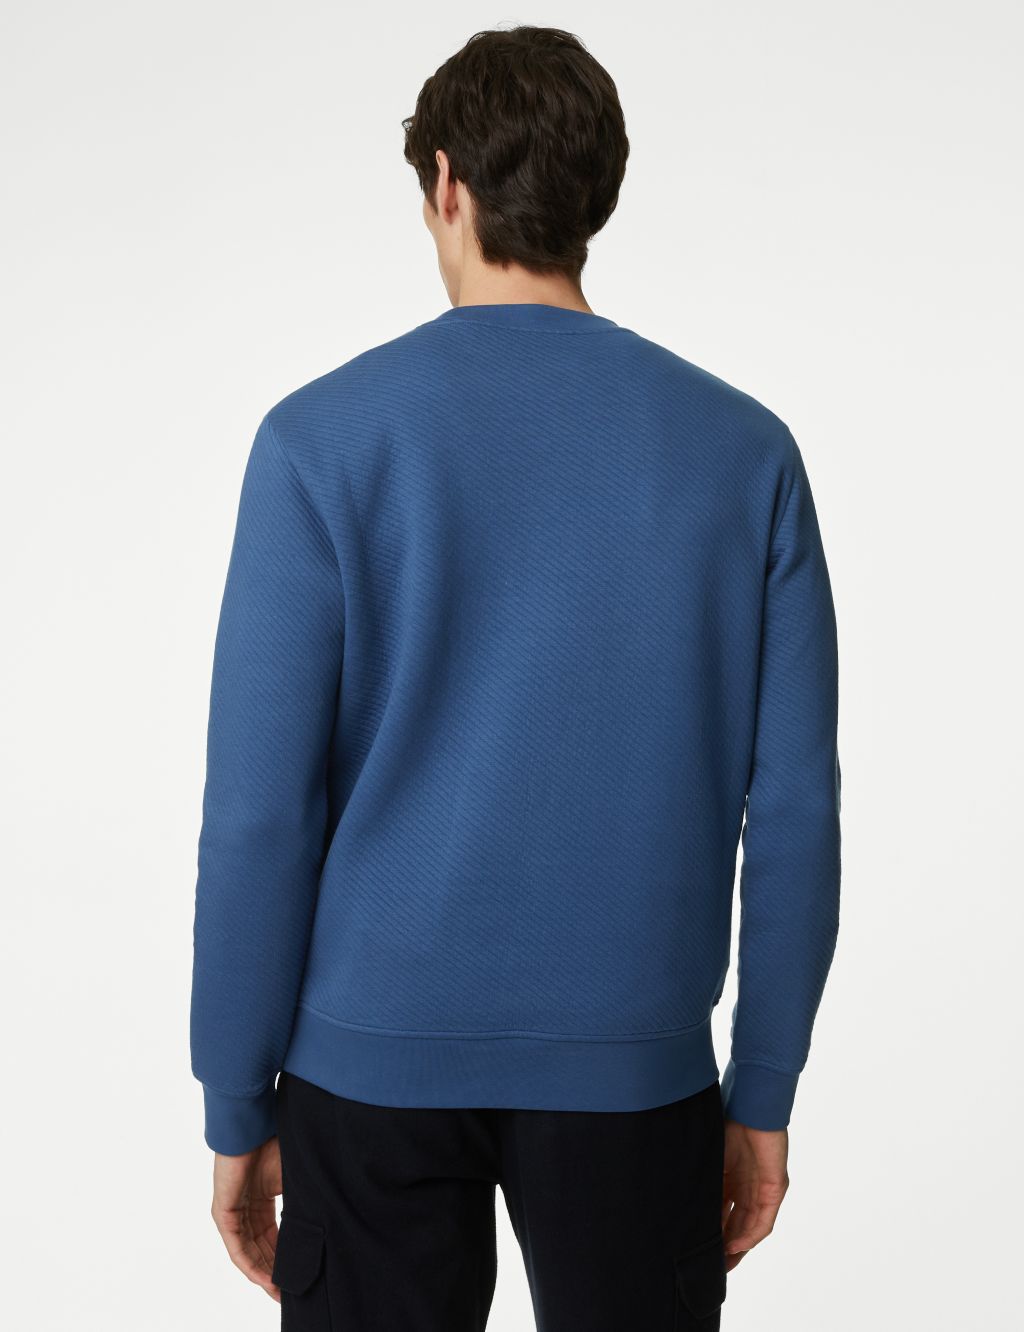 Cotton Rich Textured Crewneck Sweatshirt image 6